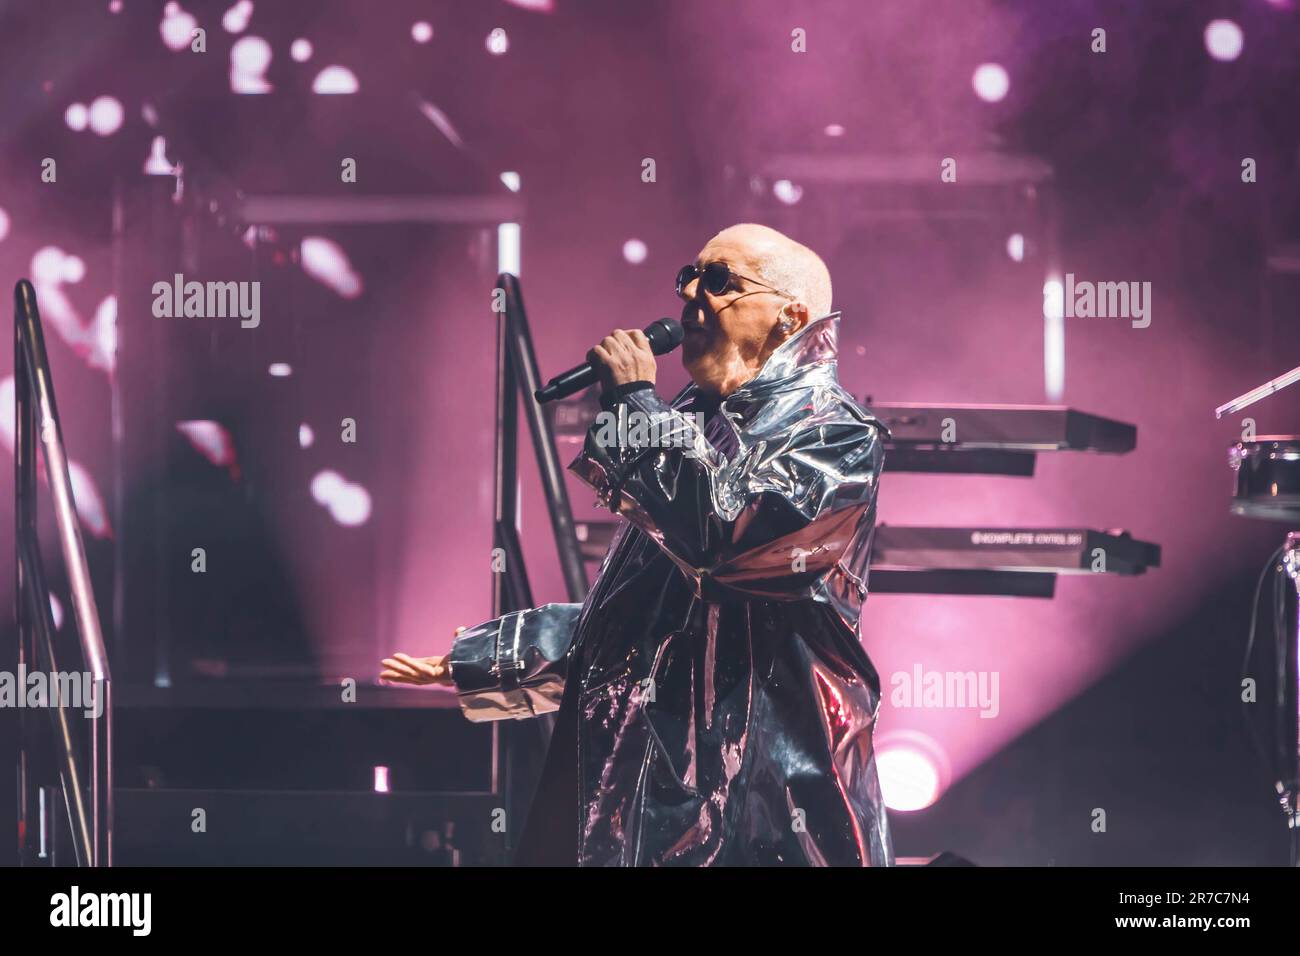 Cantante inglese, cantautore, giornalista musicale e co-fondatore del duo pop-synth PET Shop Boys, Neil Tennant suona sul palco all'Auditorium Parco della Musica di Roma. Foto Stock